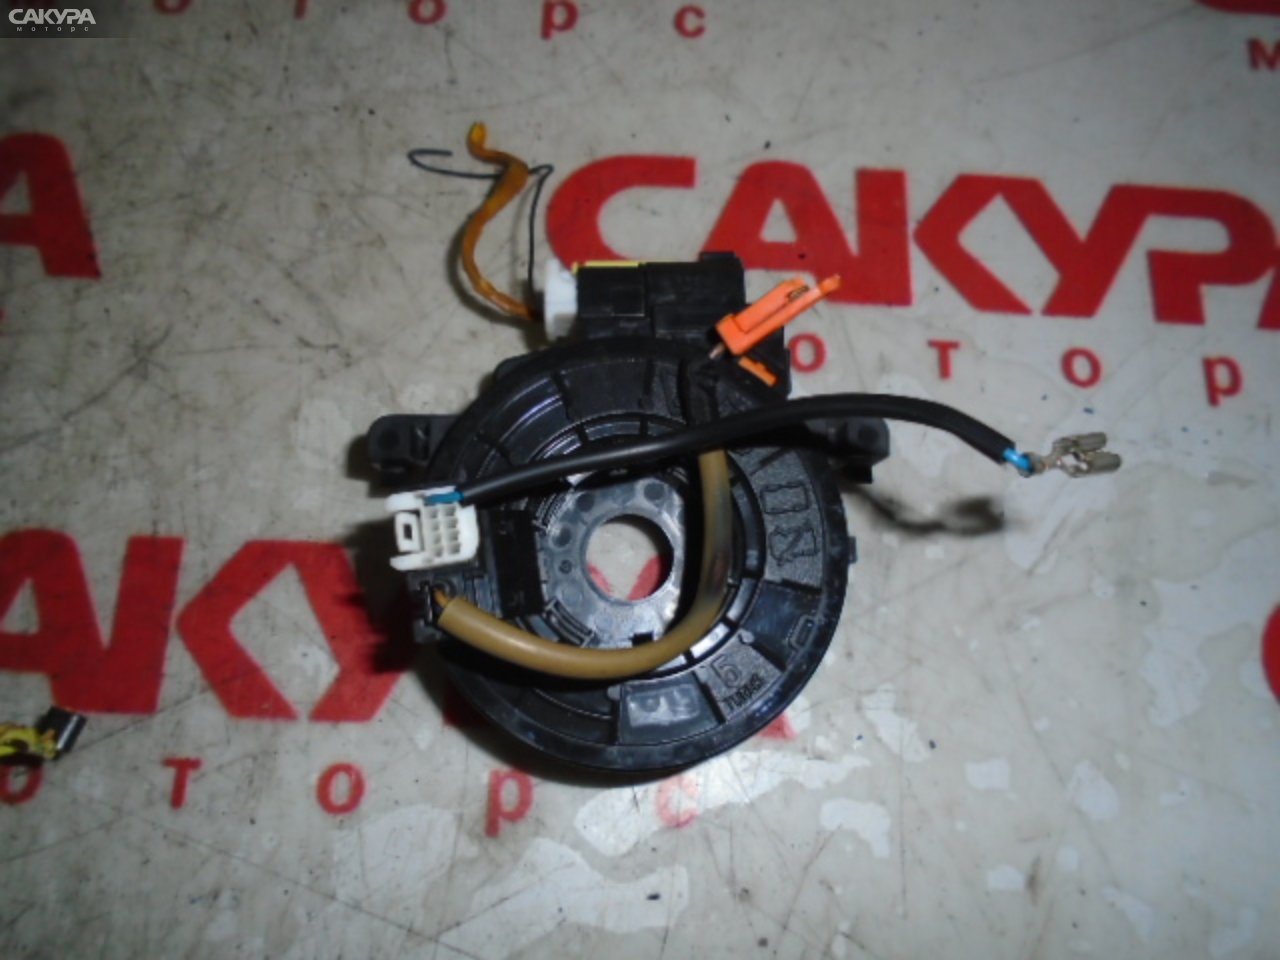 Переключатели подрулевые Toyota Vitz KSP90 1KR-FE: купить в Сакура Моторс Кемерово.